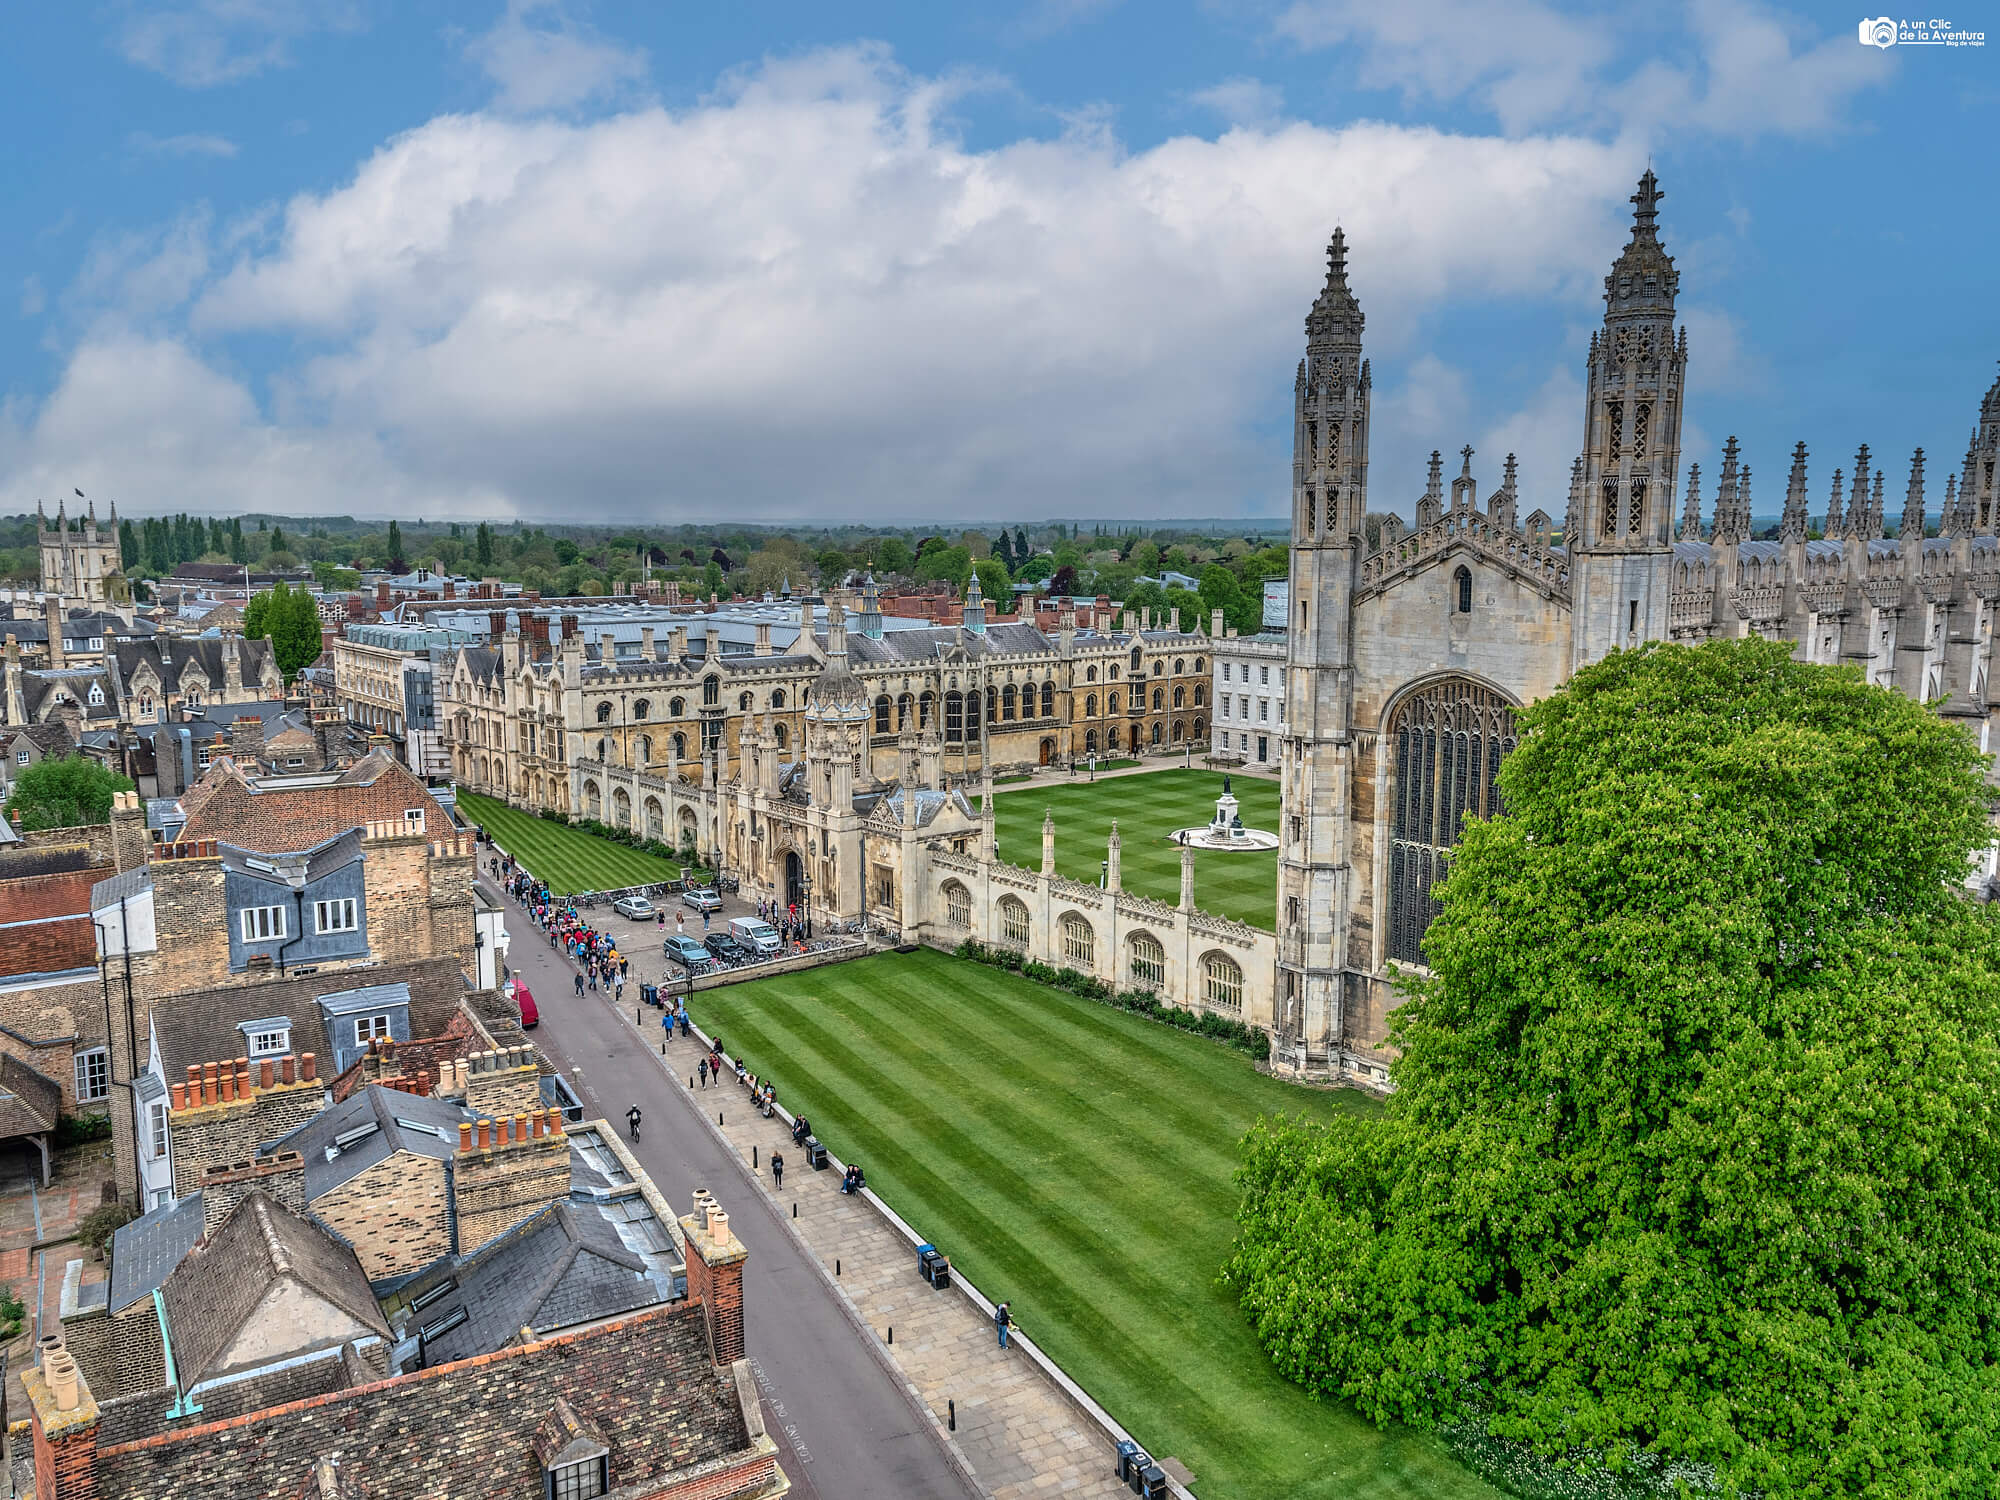 King’s College desde la torre de la Iglesia Great St Mary’s, que ver en Cambridge